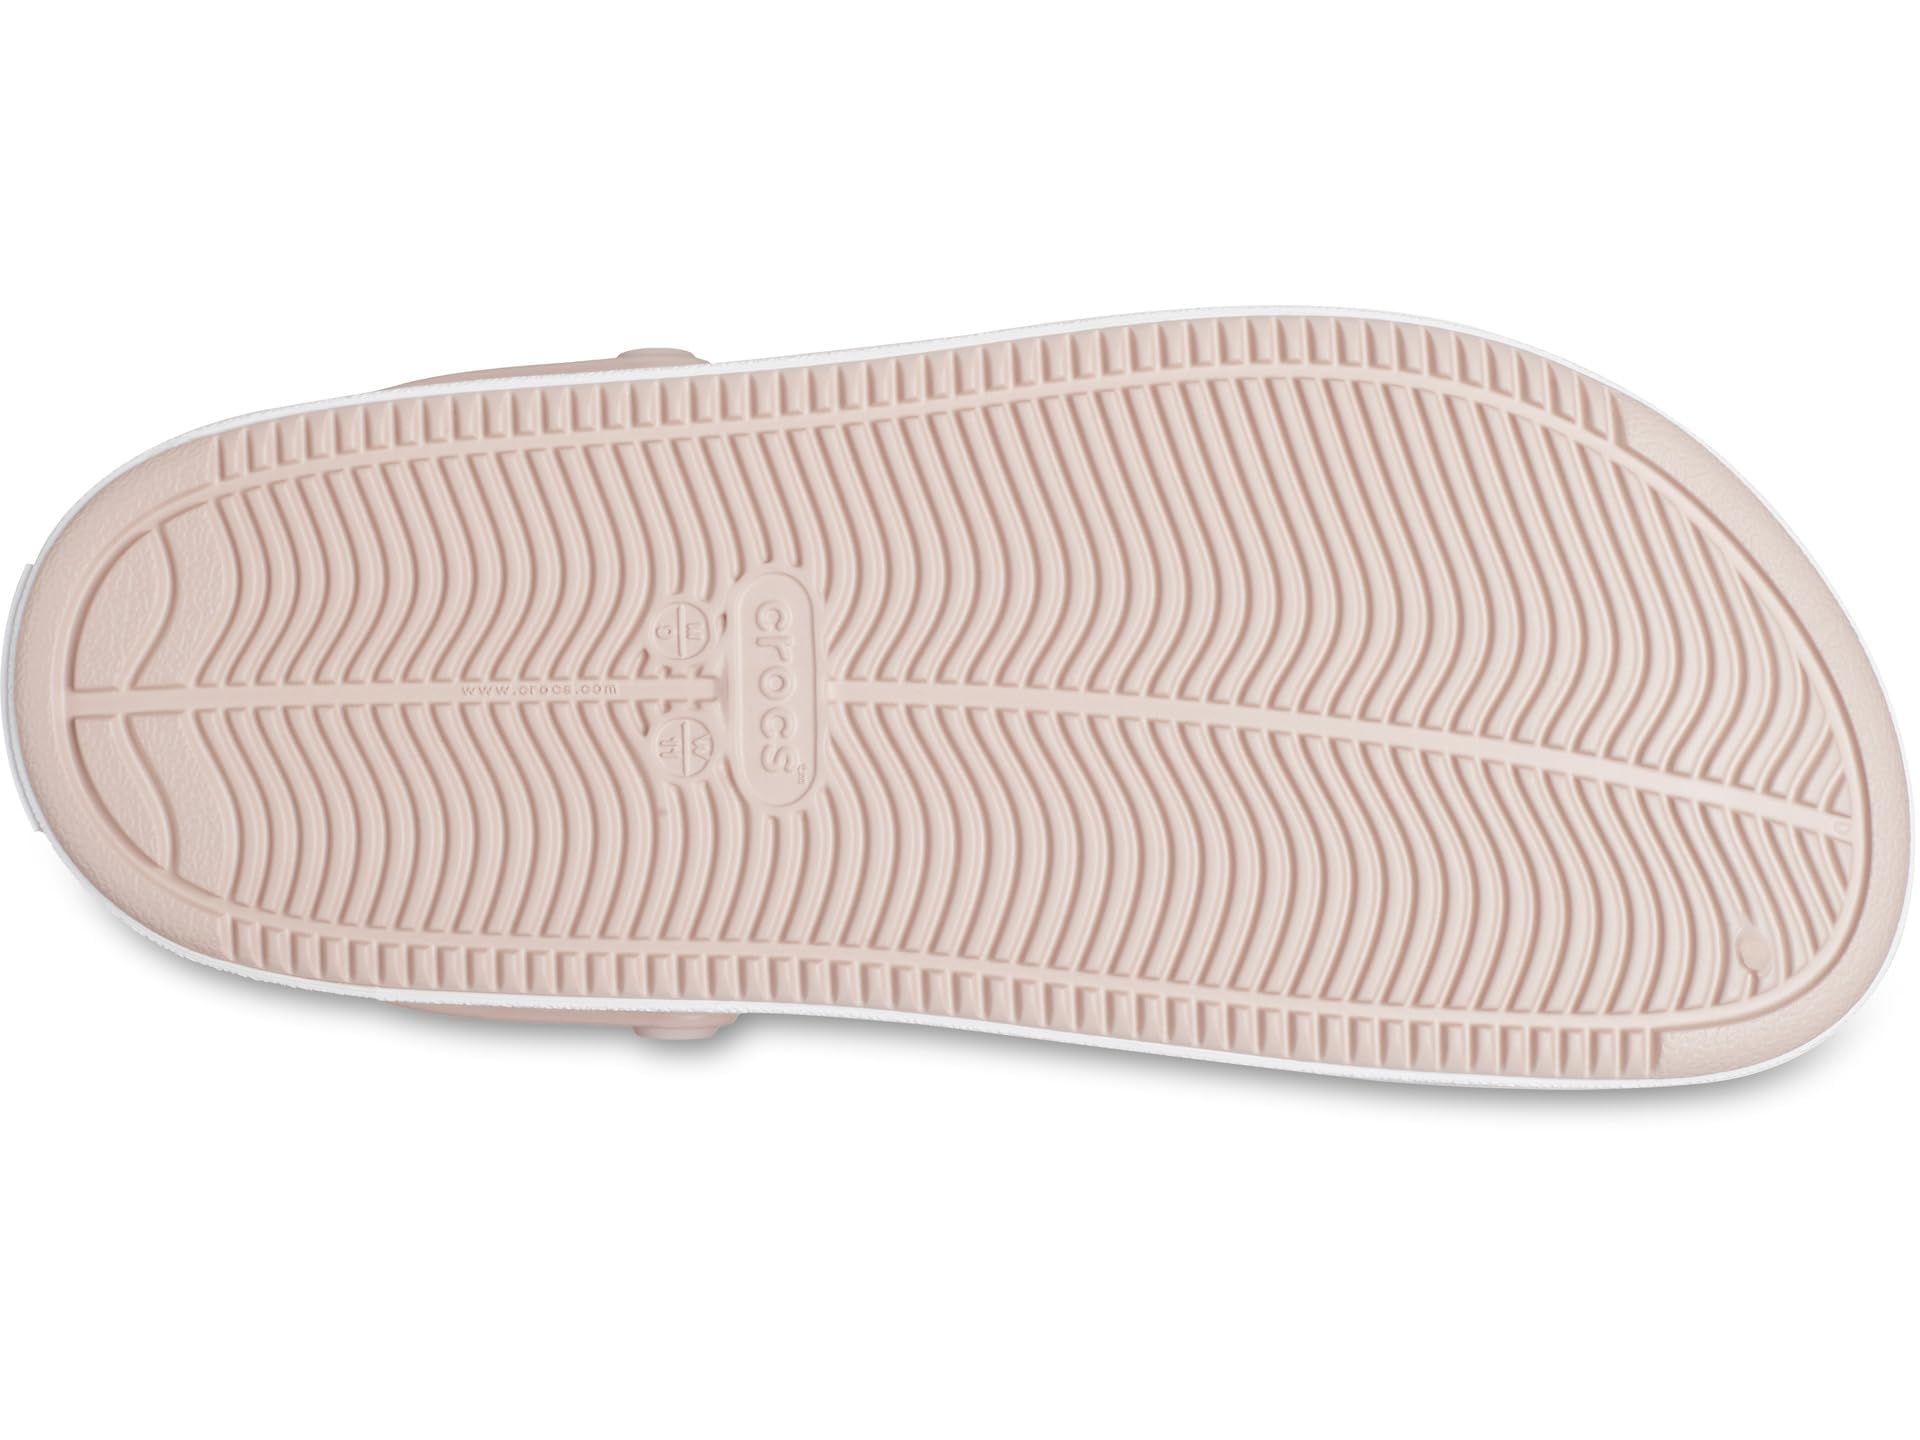 Crocs Men's Platform Coat Clogs Citrus Sandals 10.6 inches (27 cm)